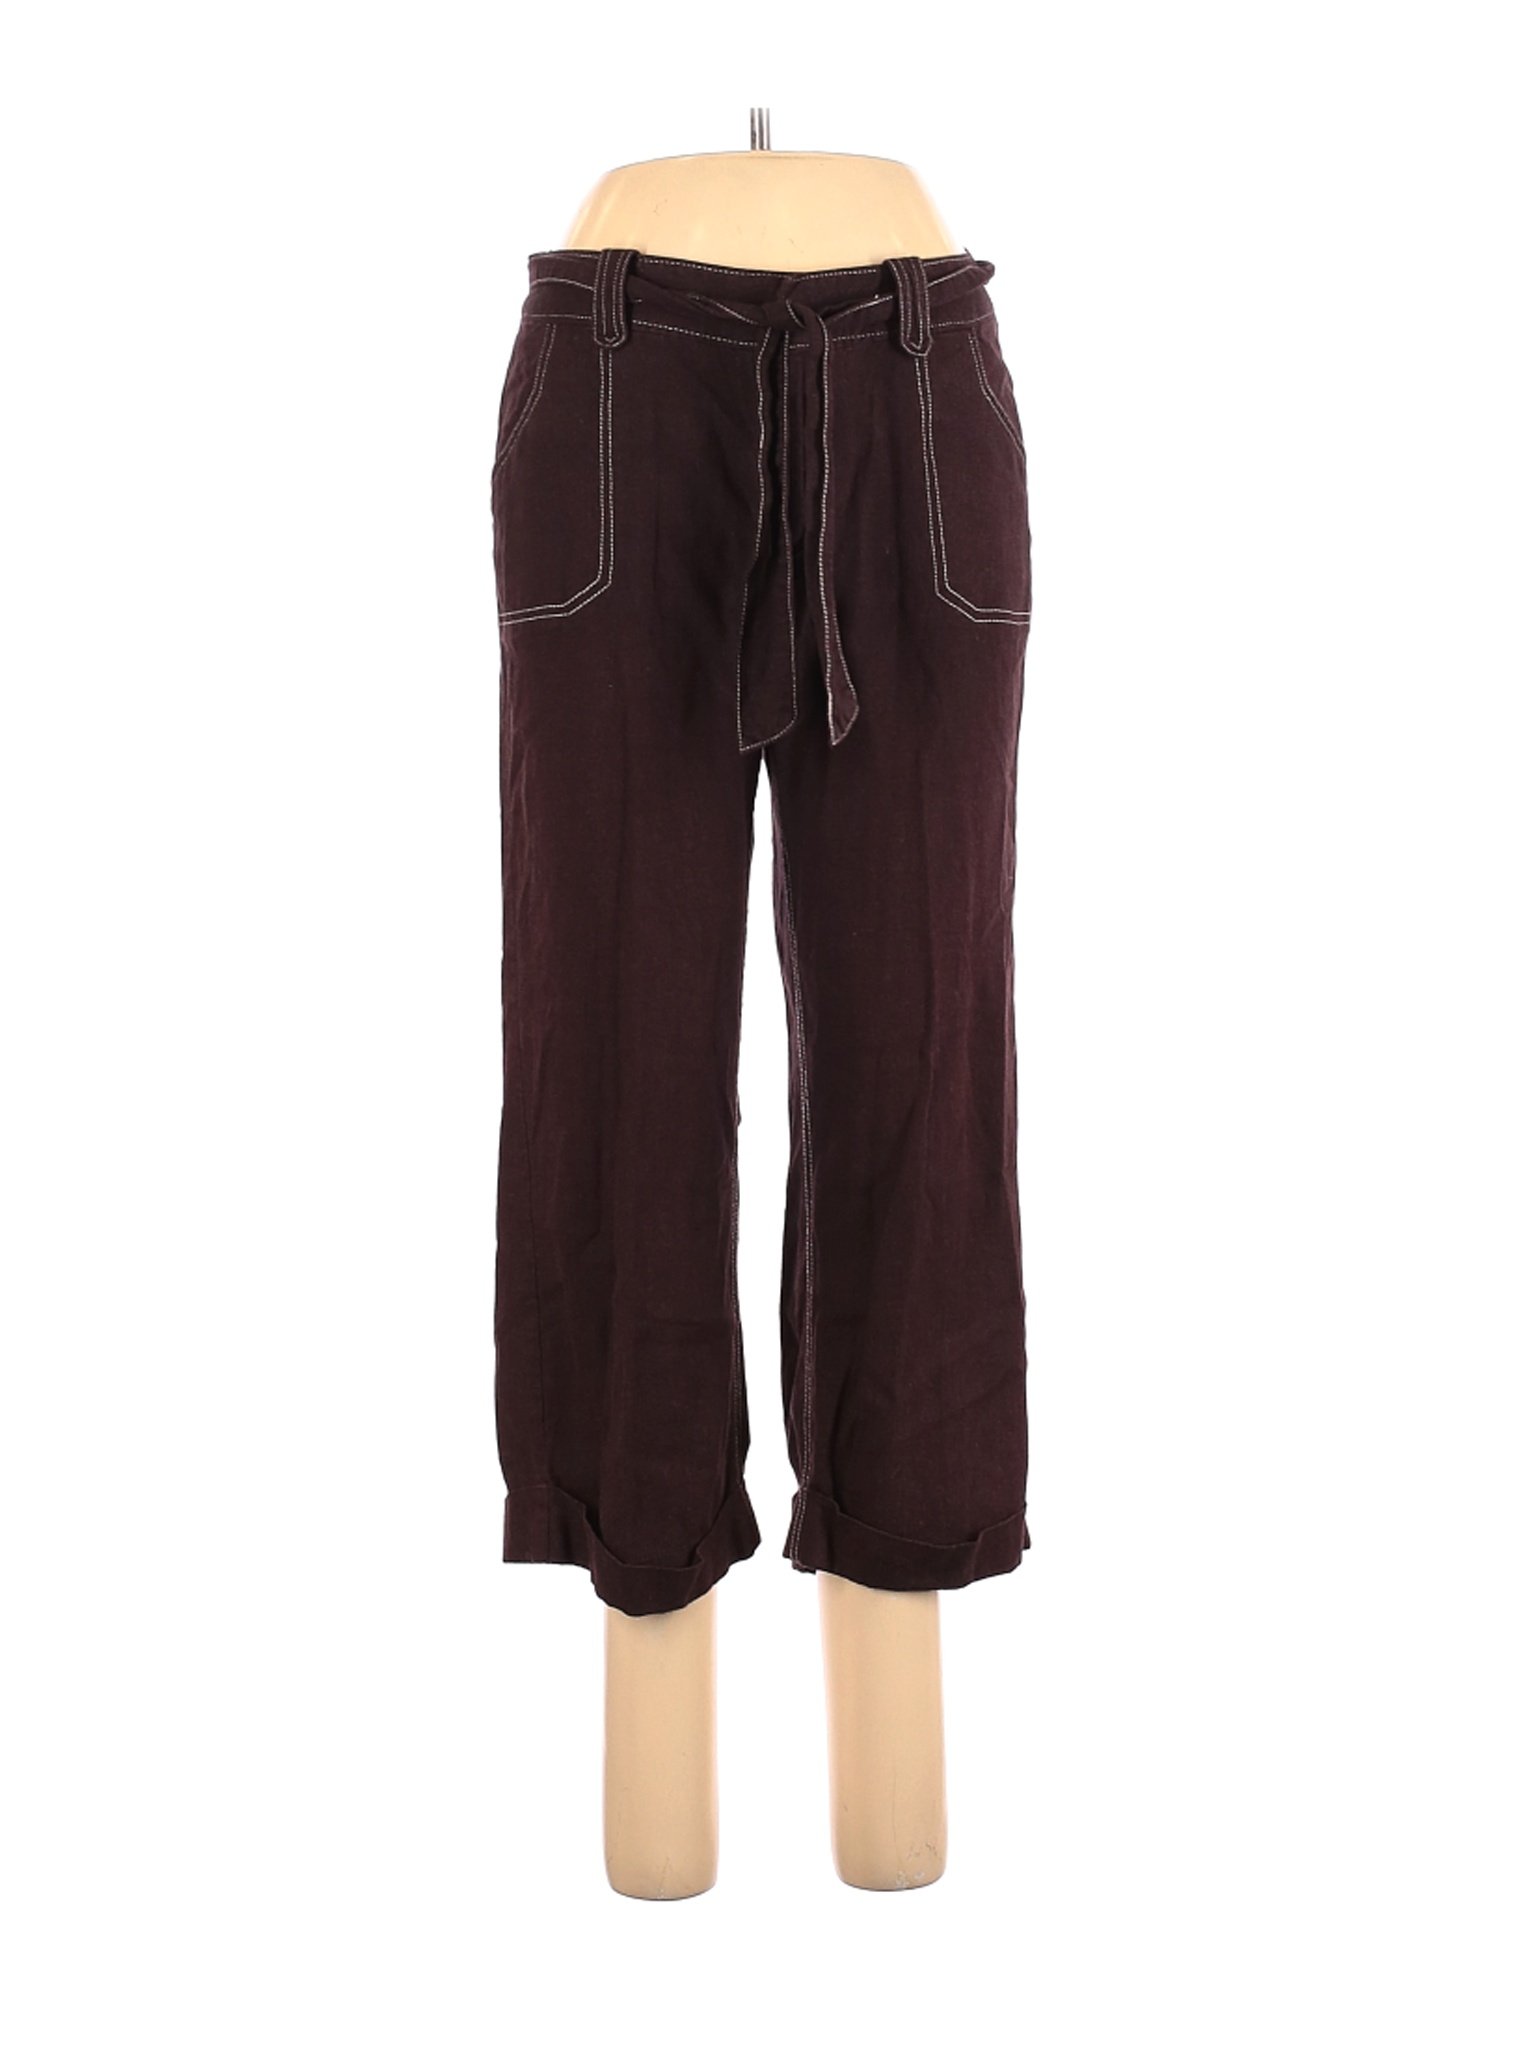 Assorted Brands Women Brown Linen Pants 8 | eBay